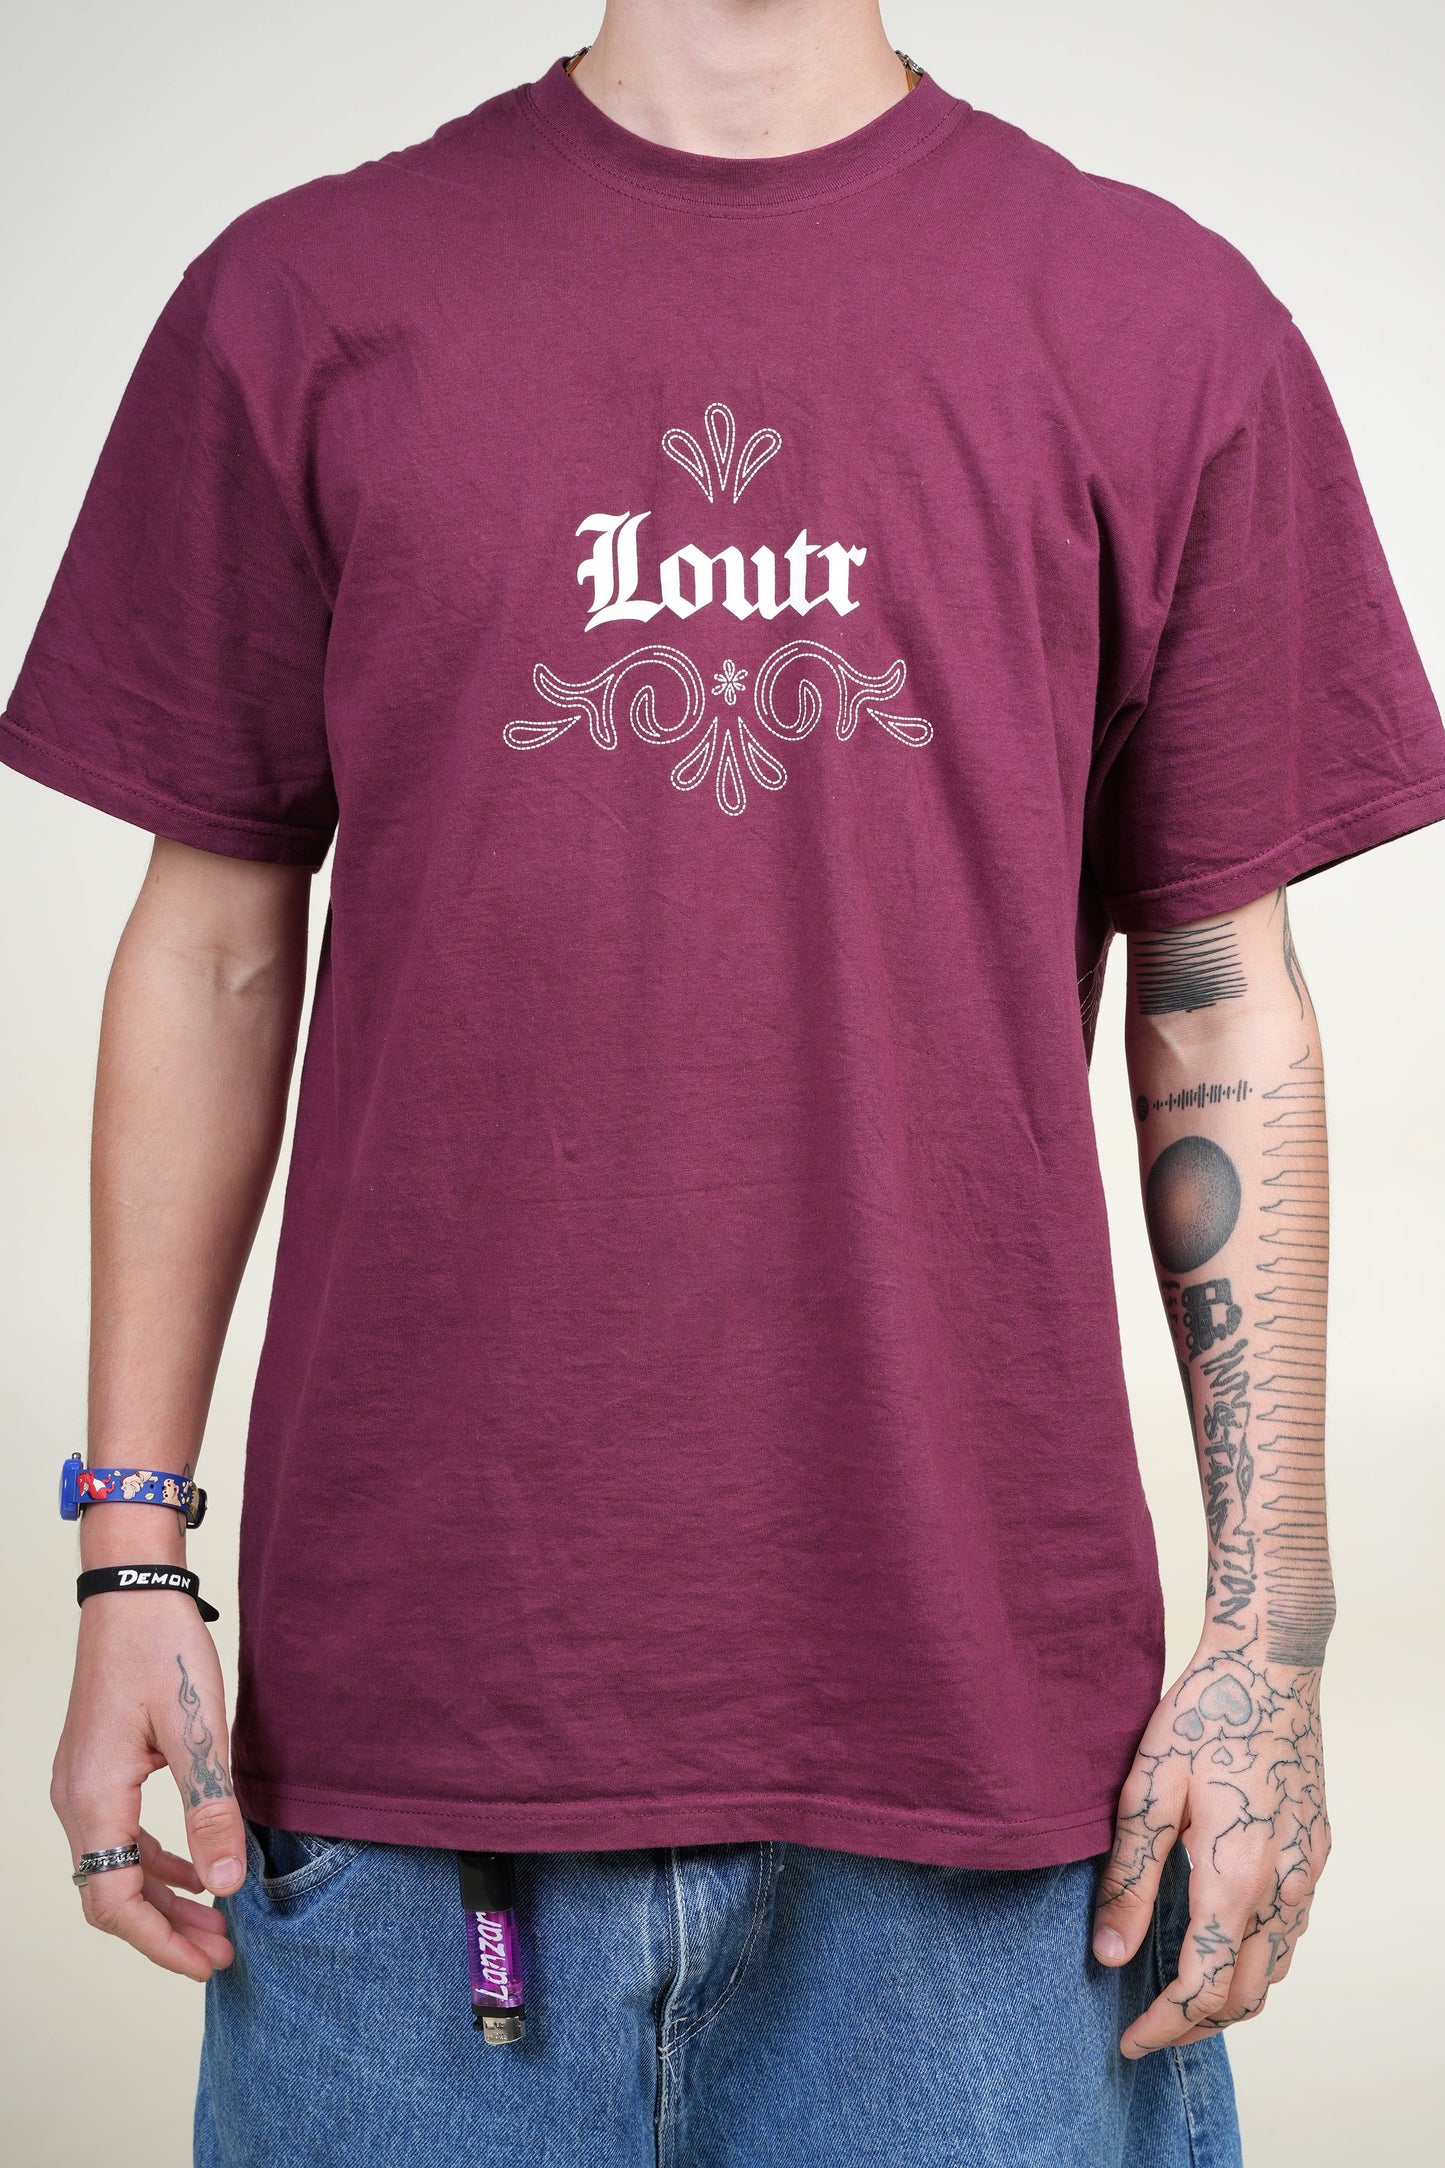 Loutr Shirt